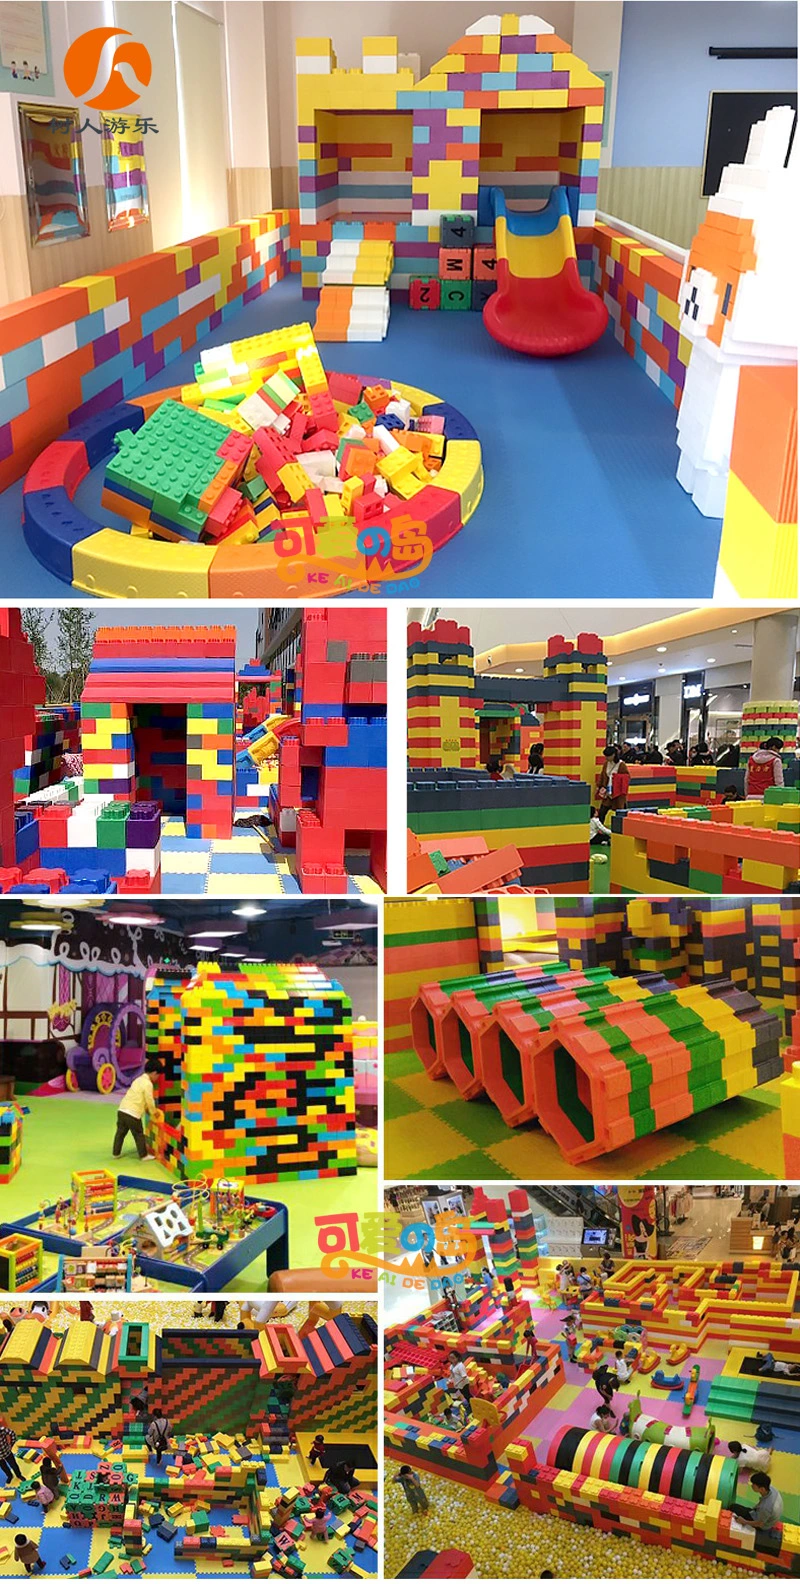 Building Bricks and Blocks Bricks Prices Blocks Toys for Kids Playground